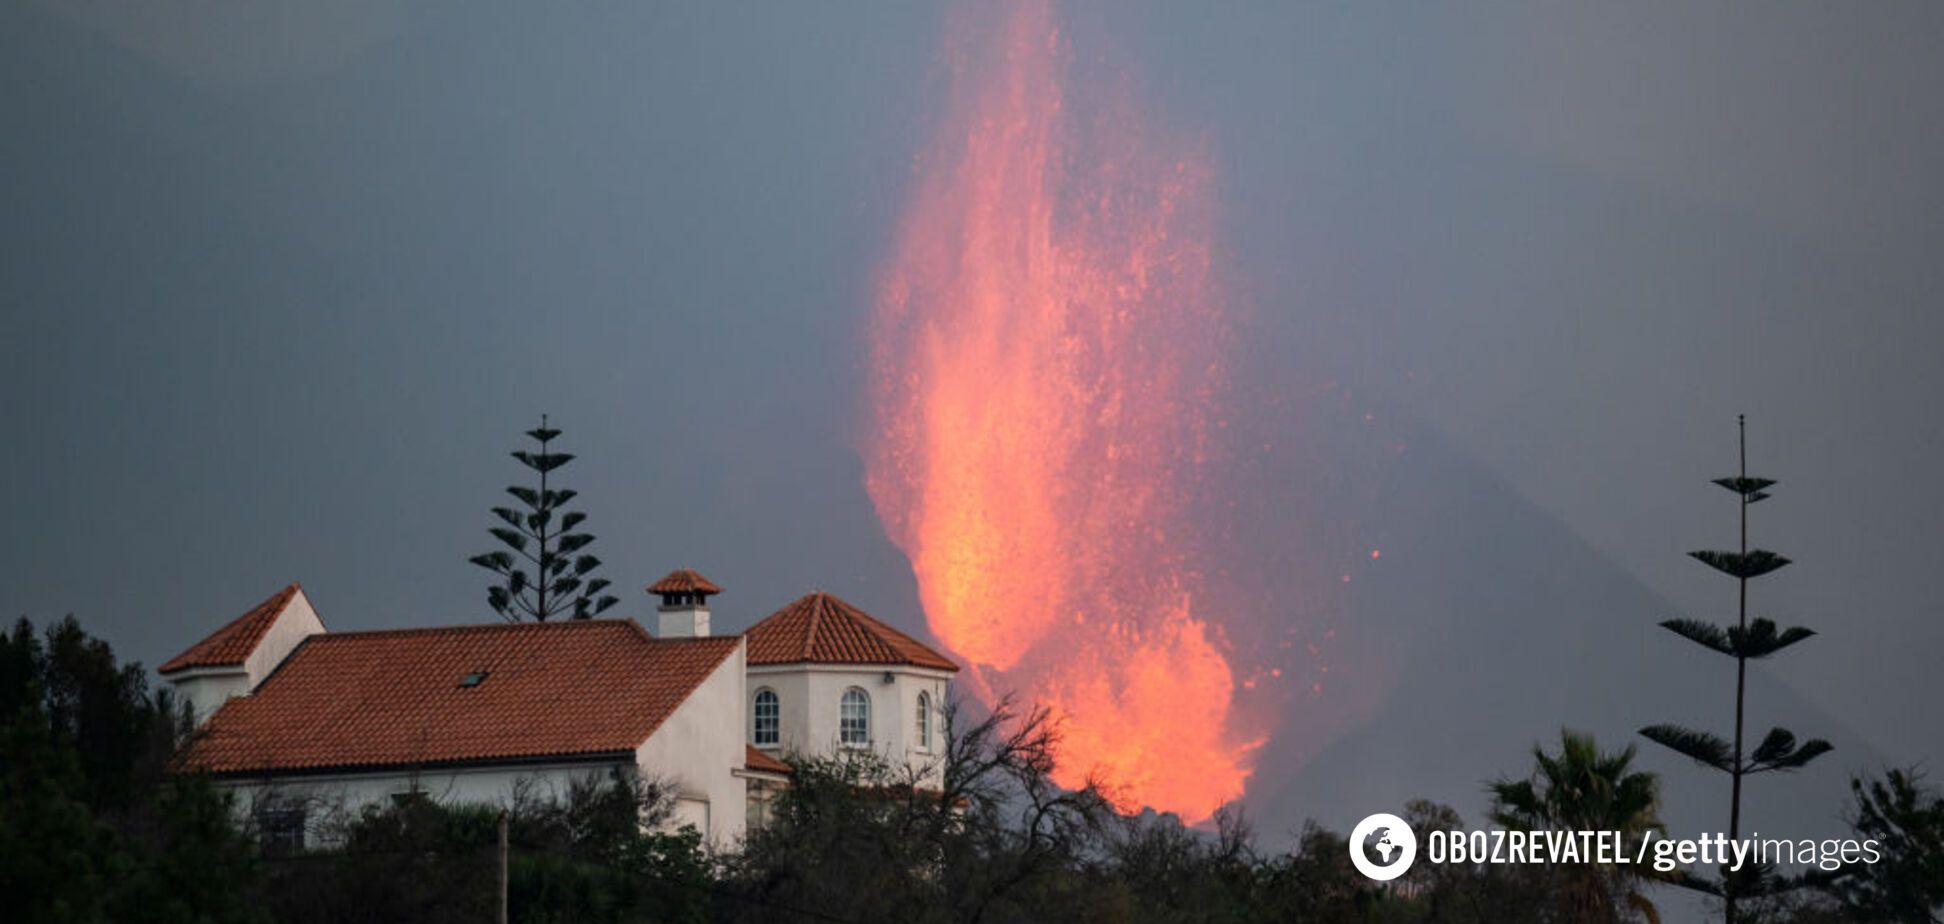 На Канарских островах из-за извержения вулкана горы пепла покрыли улицы. Видео